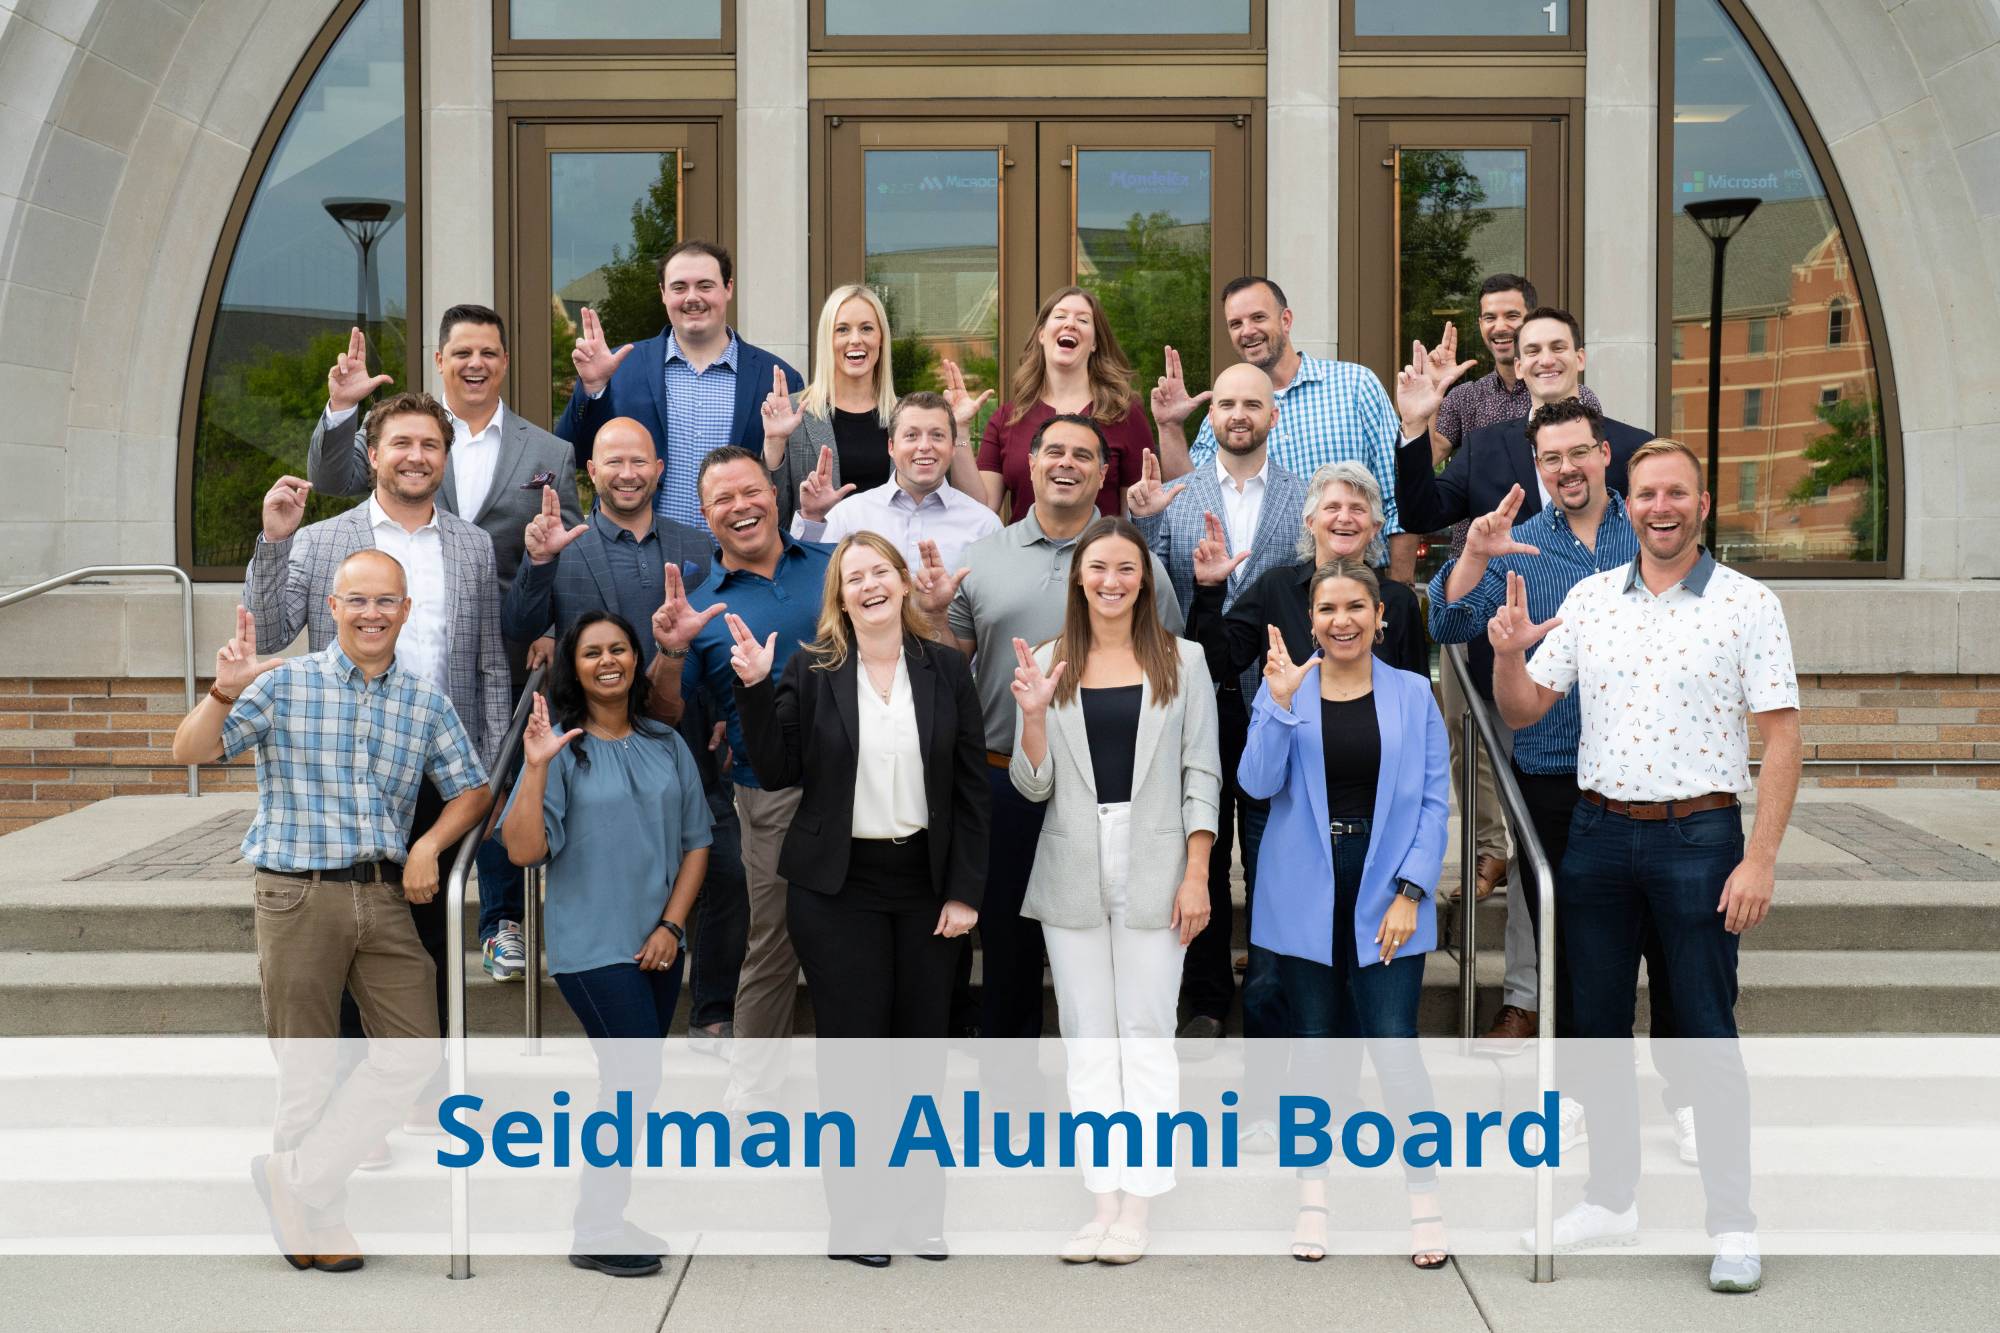 Seidman Alumni board